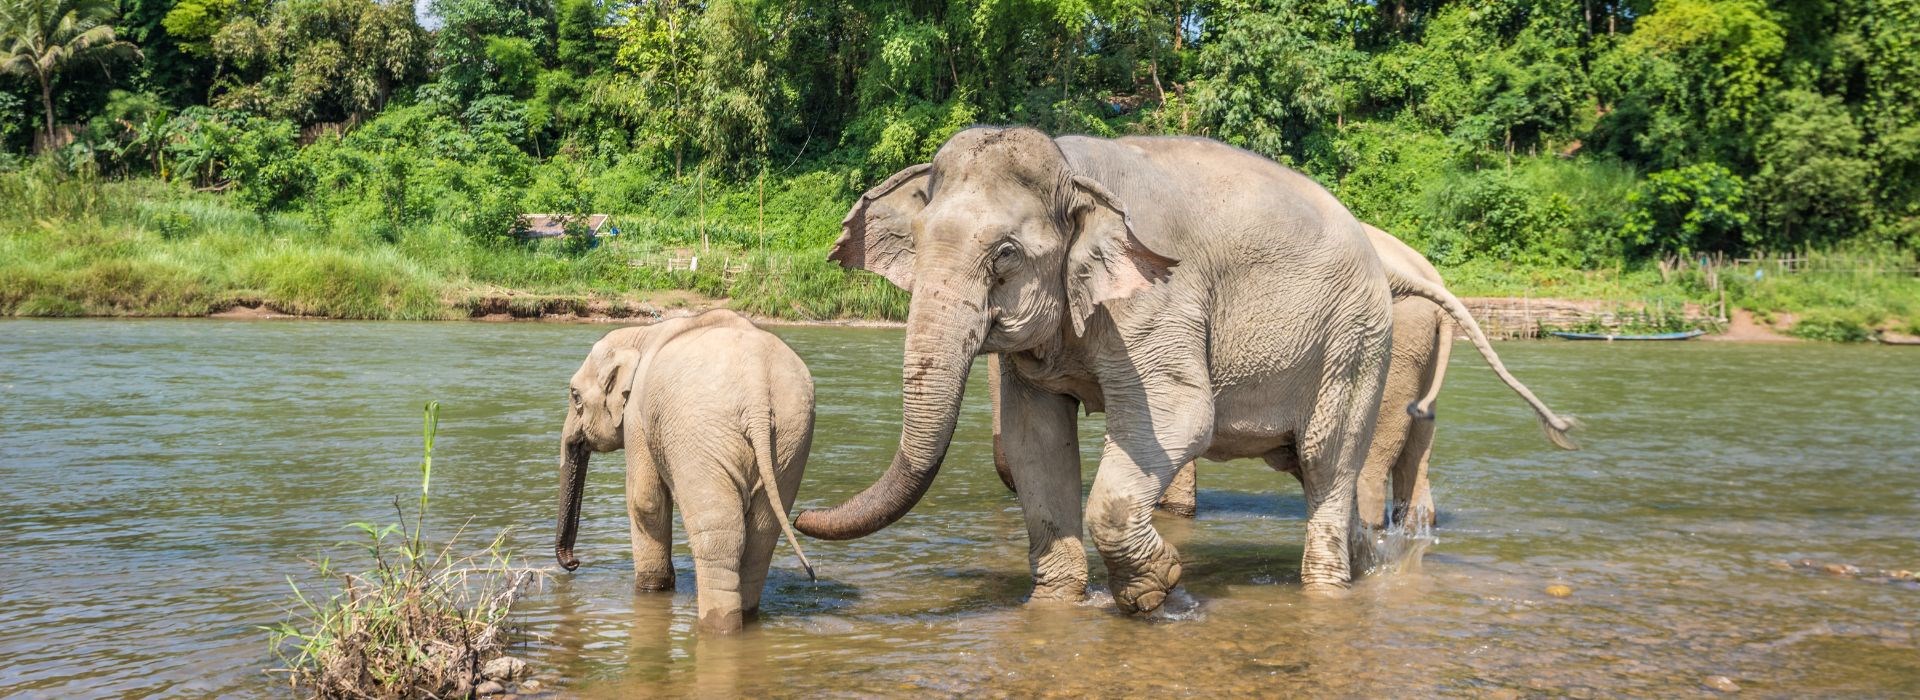 Voir un sanctuaire éthique pour éléphants au Laos